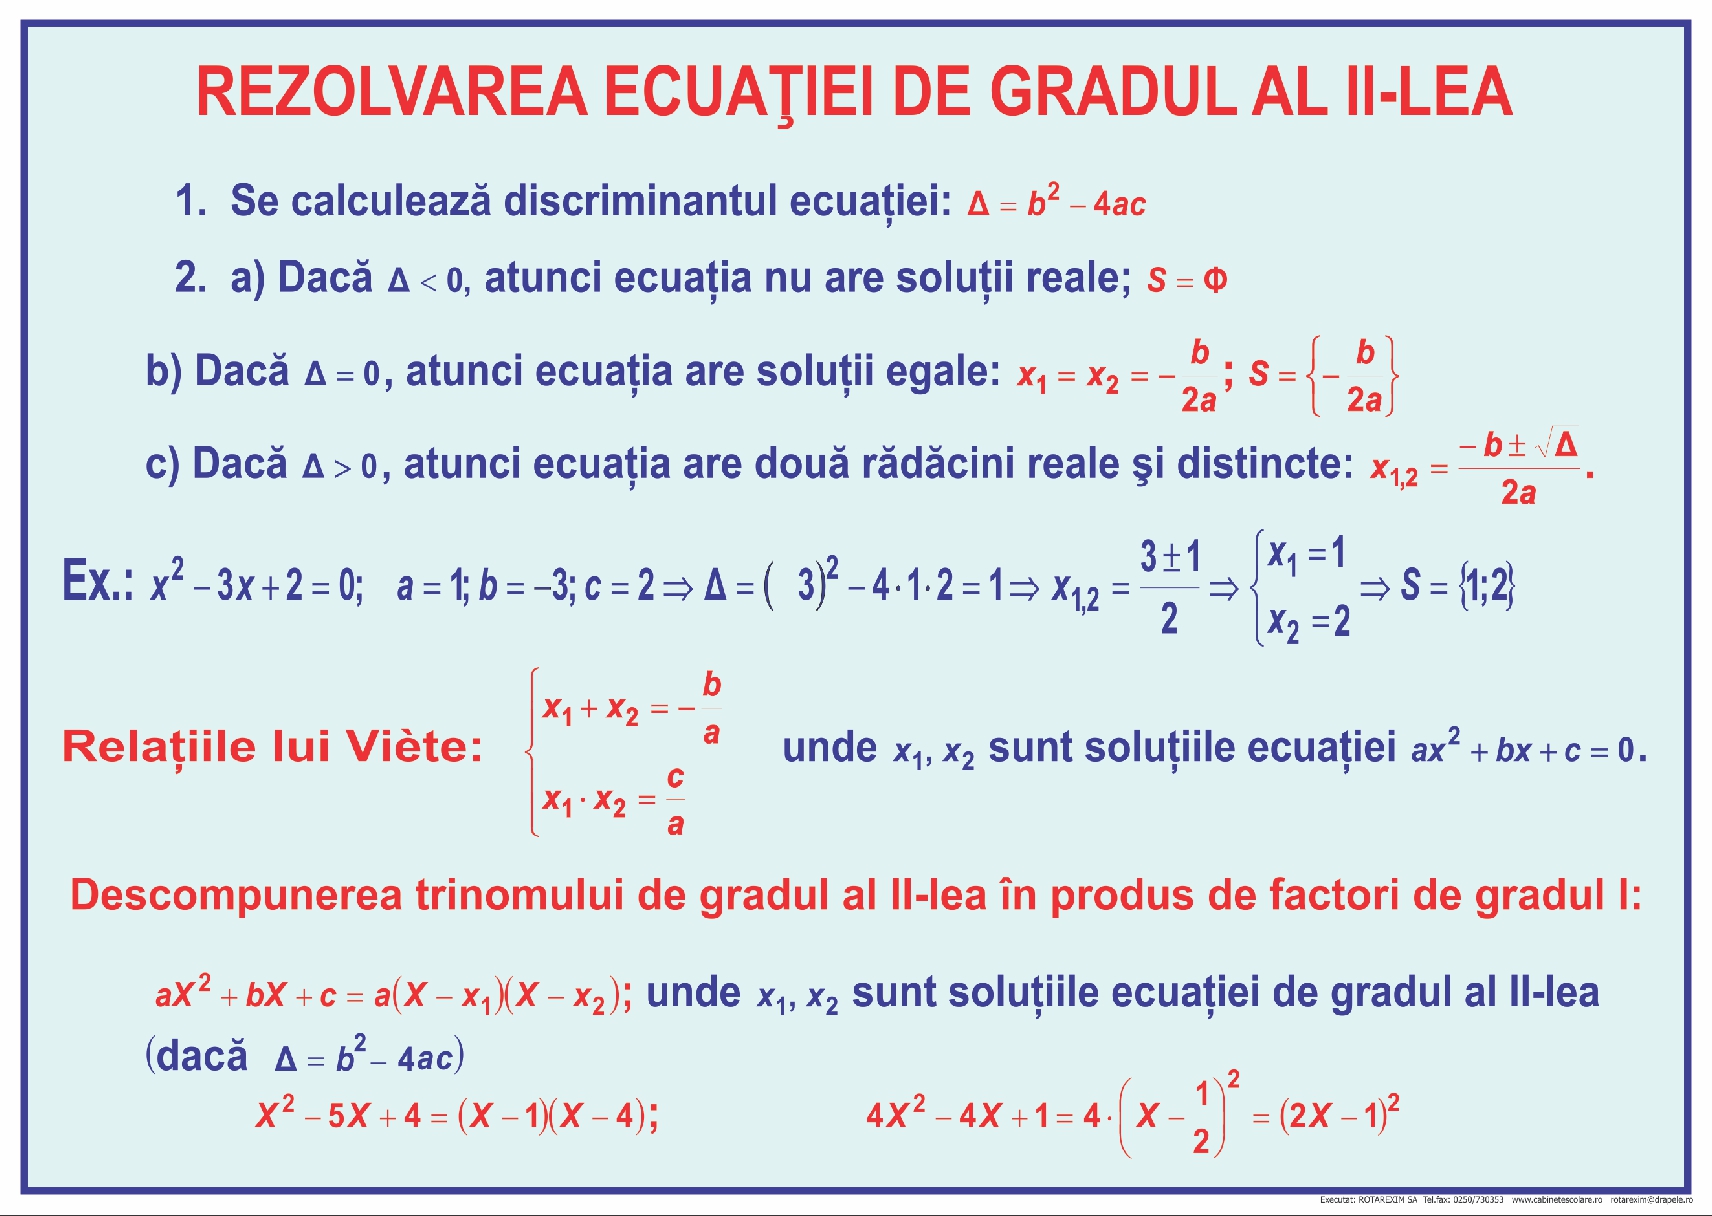 Rezolvarea ecuației de gradul al II-lea